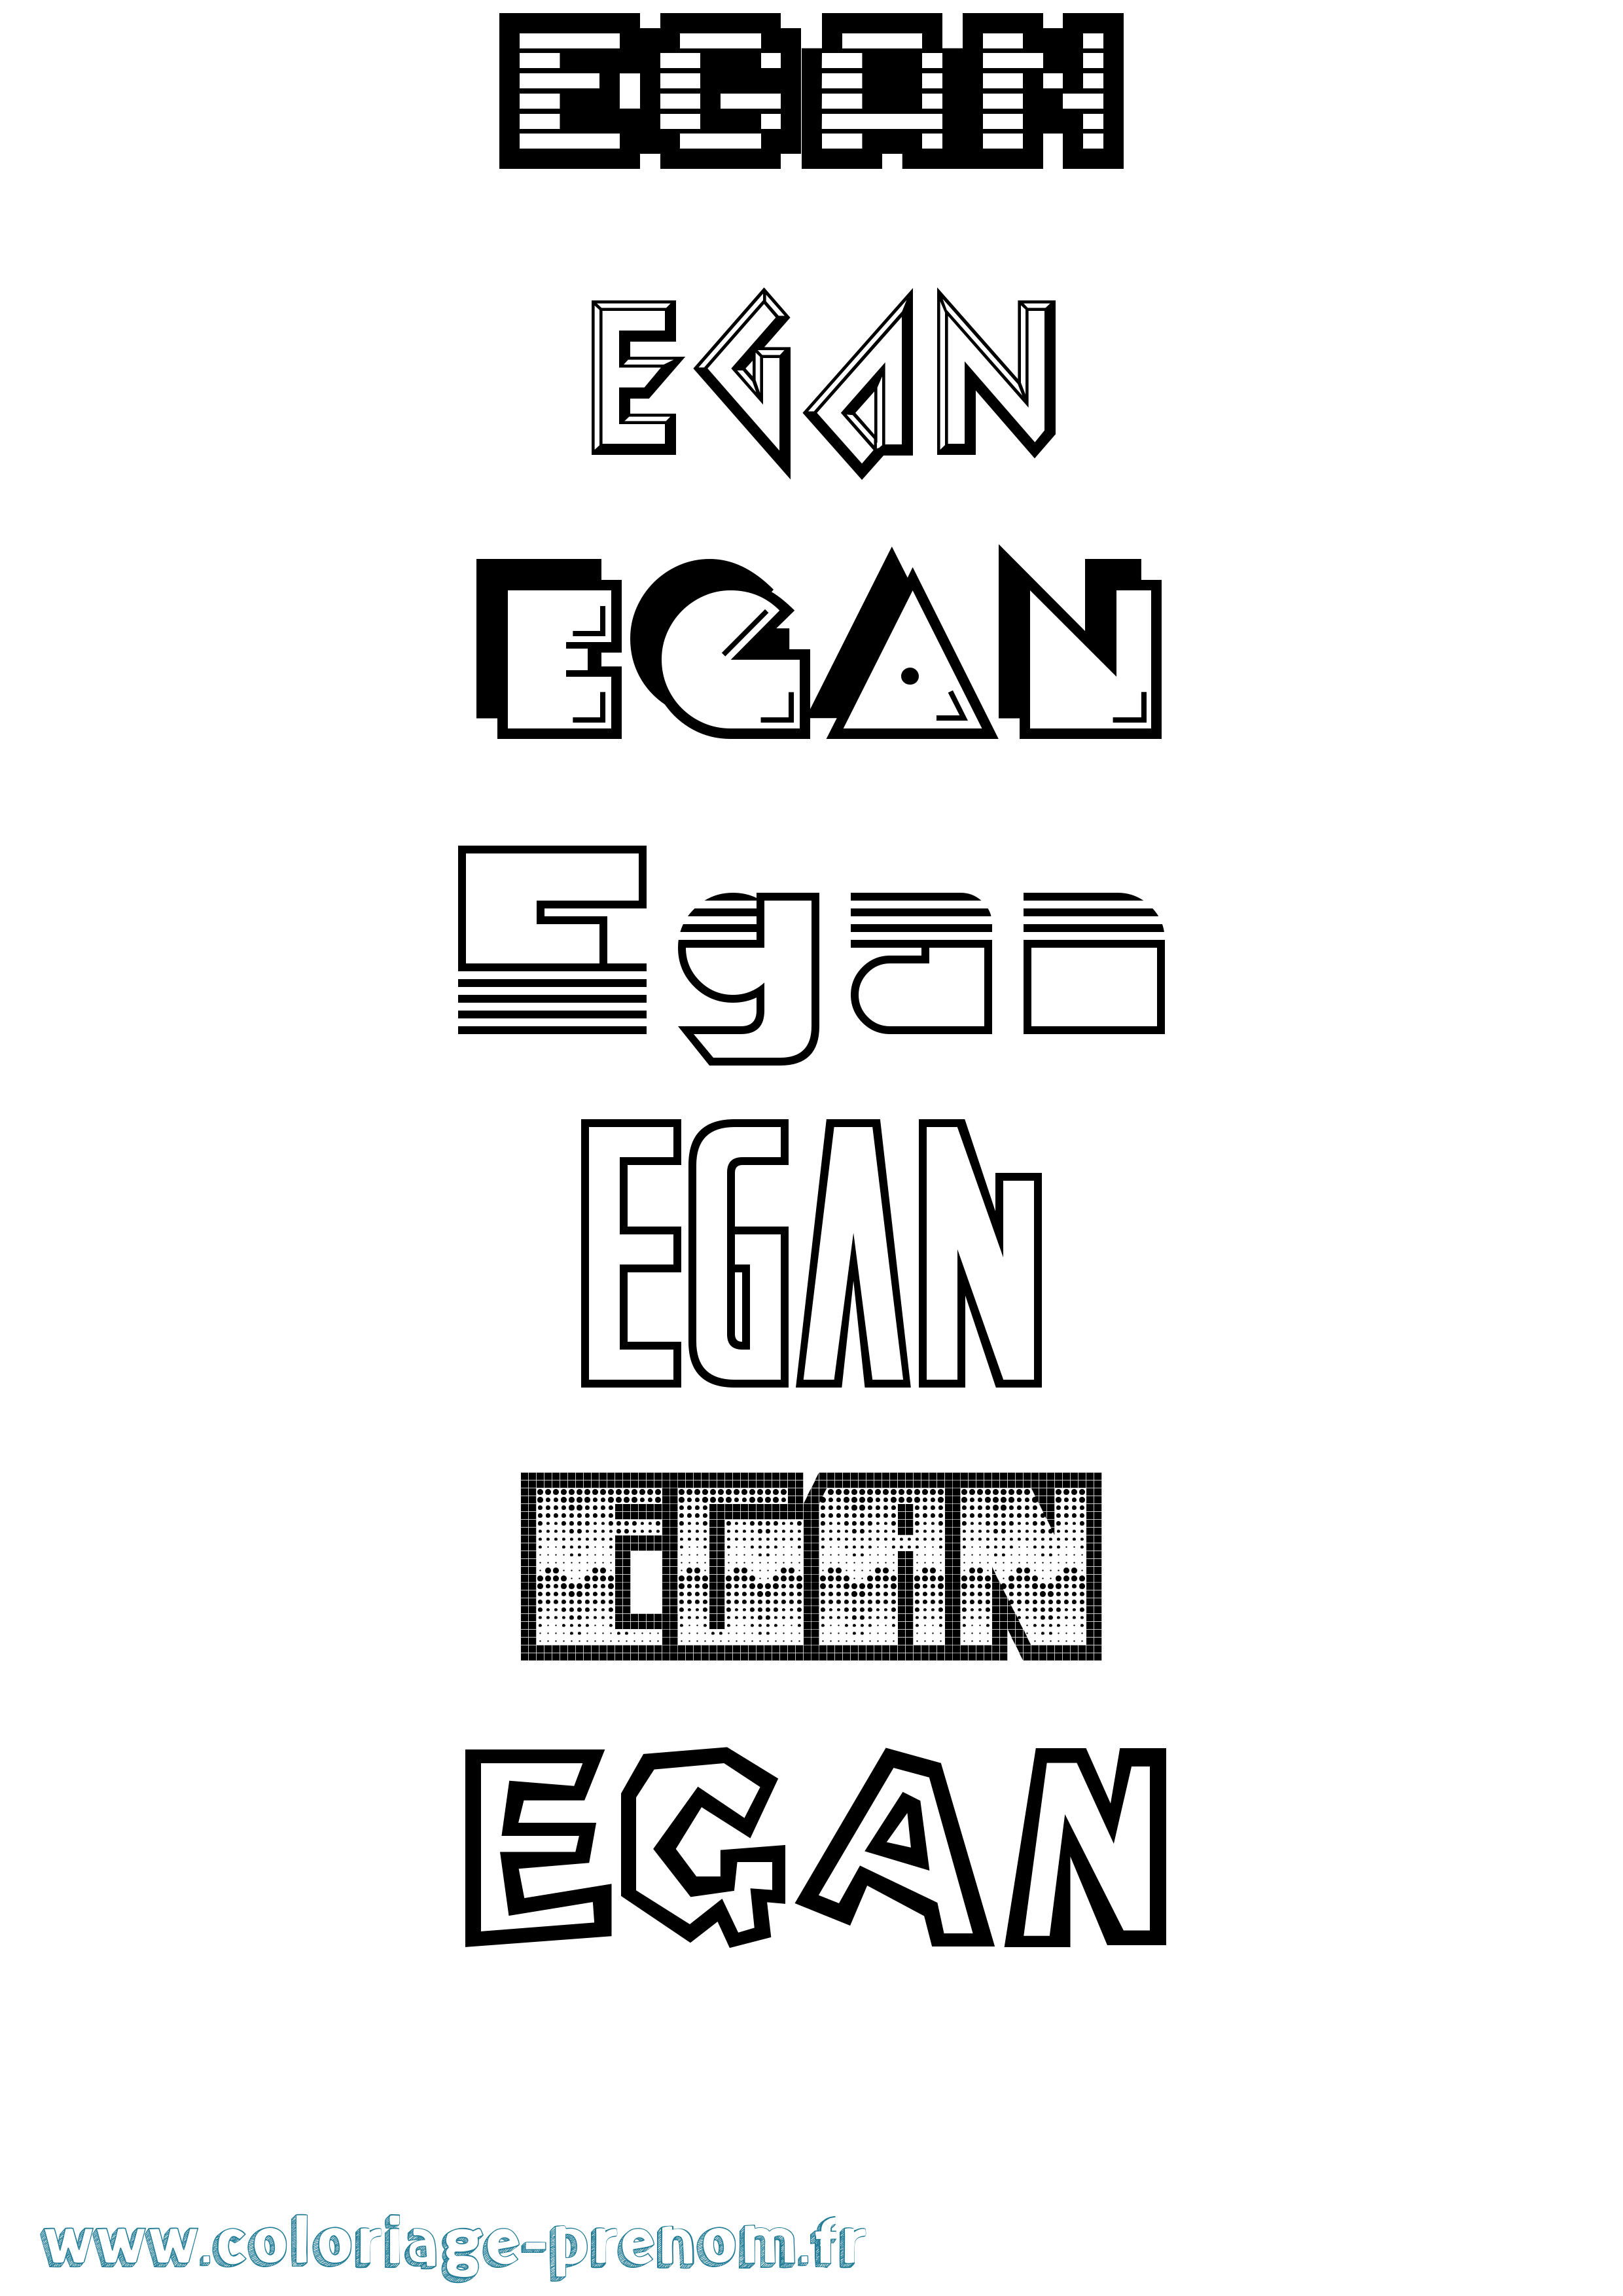 Coloriage prénom Egan Jeux Vidéos